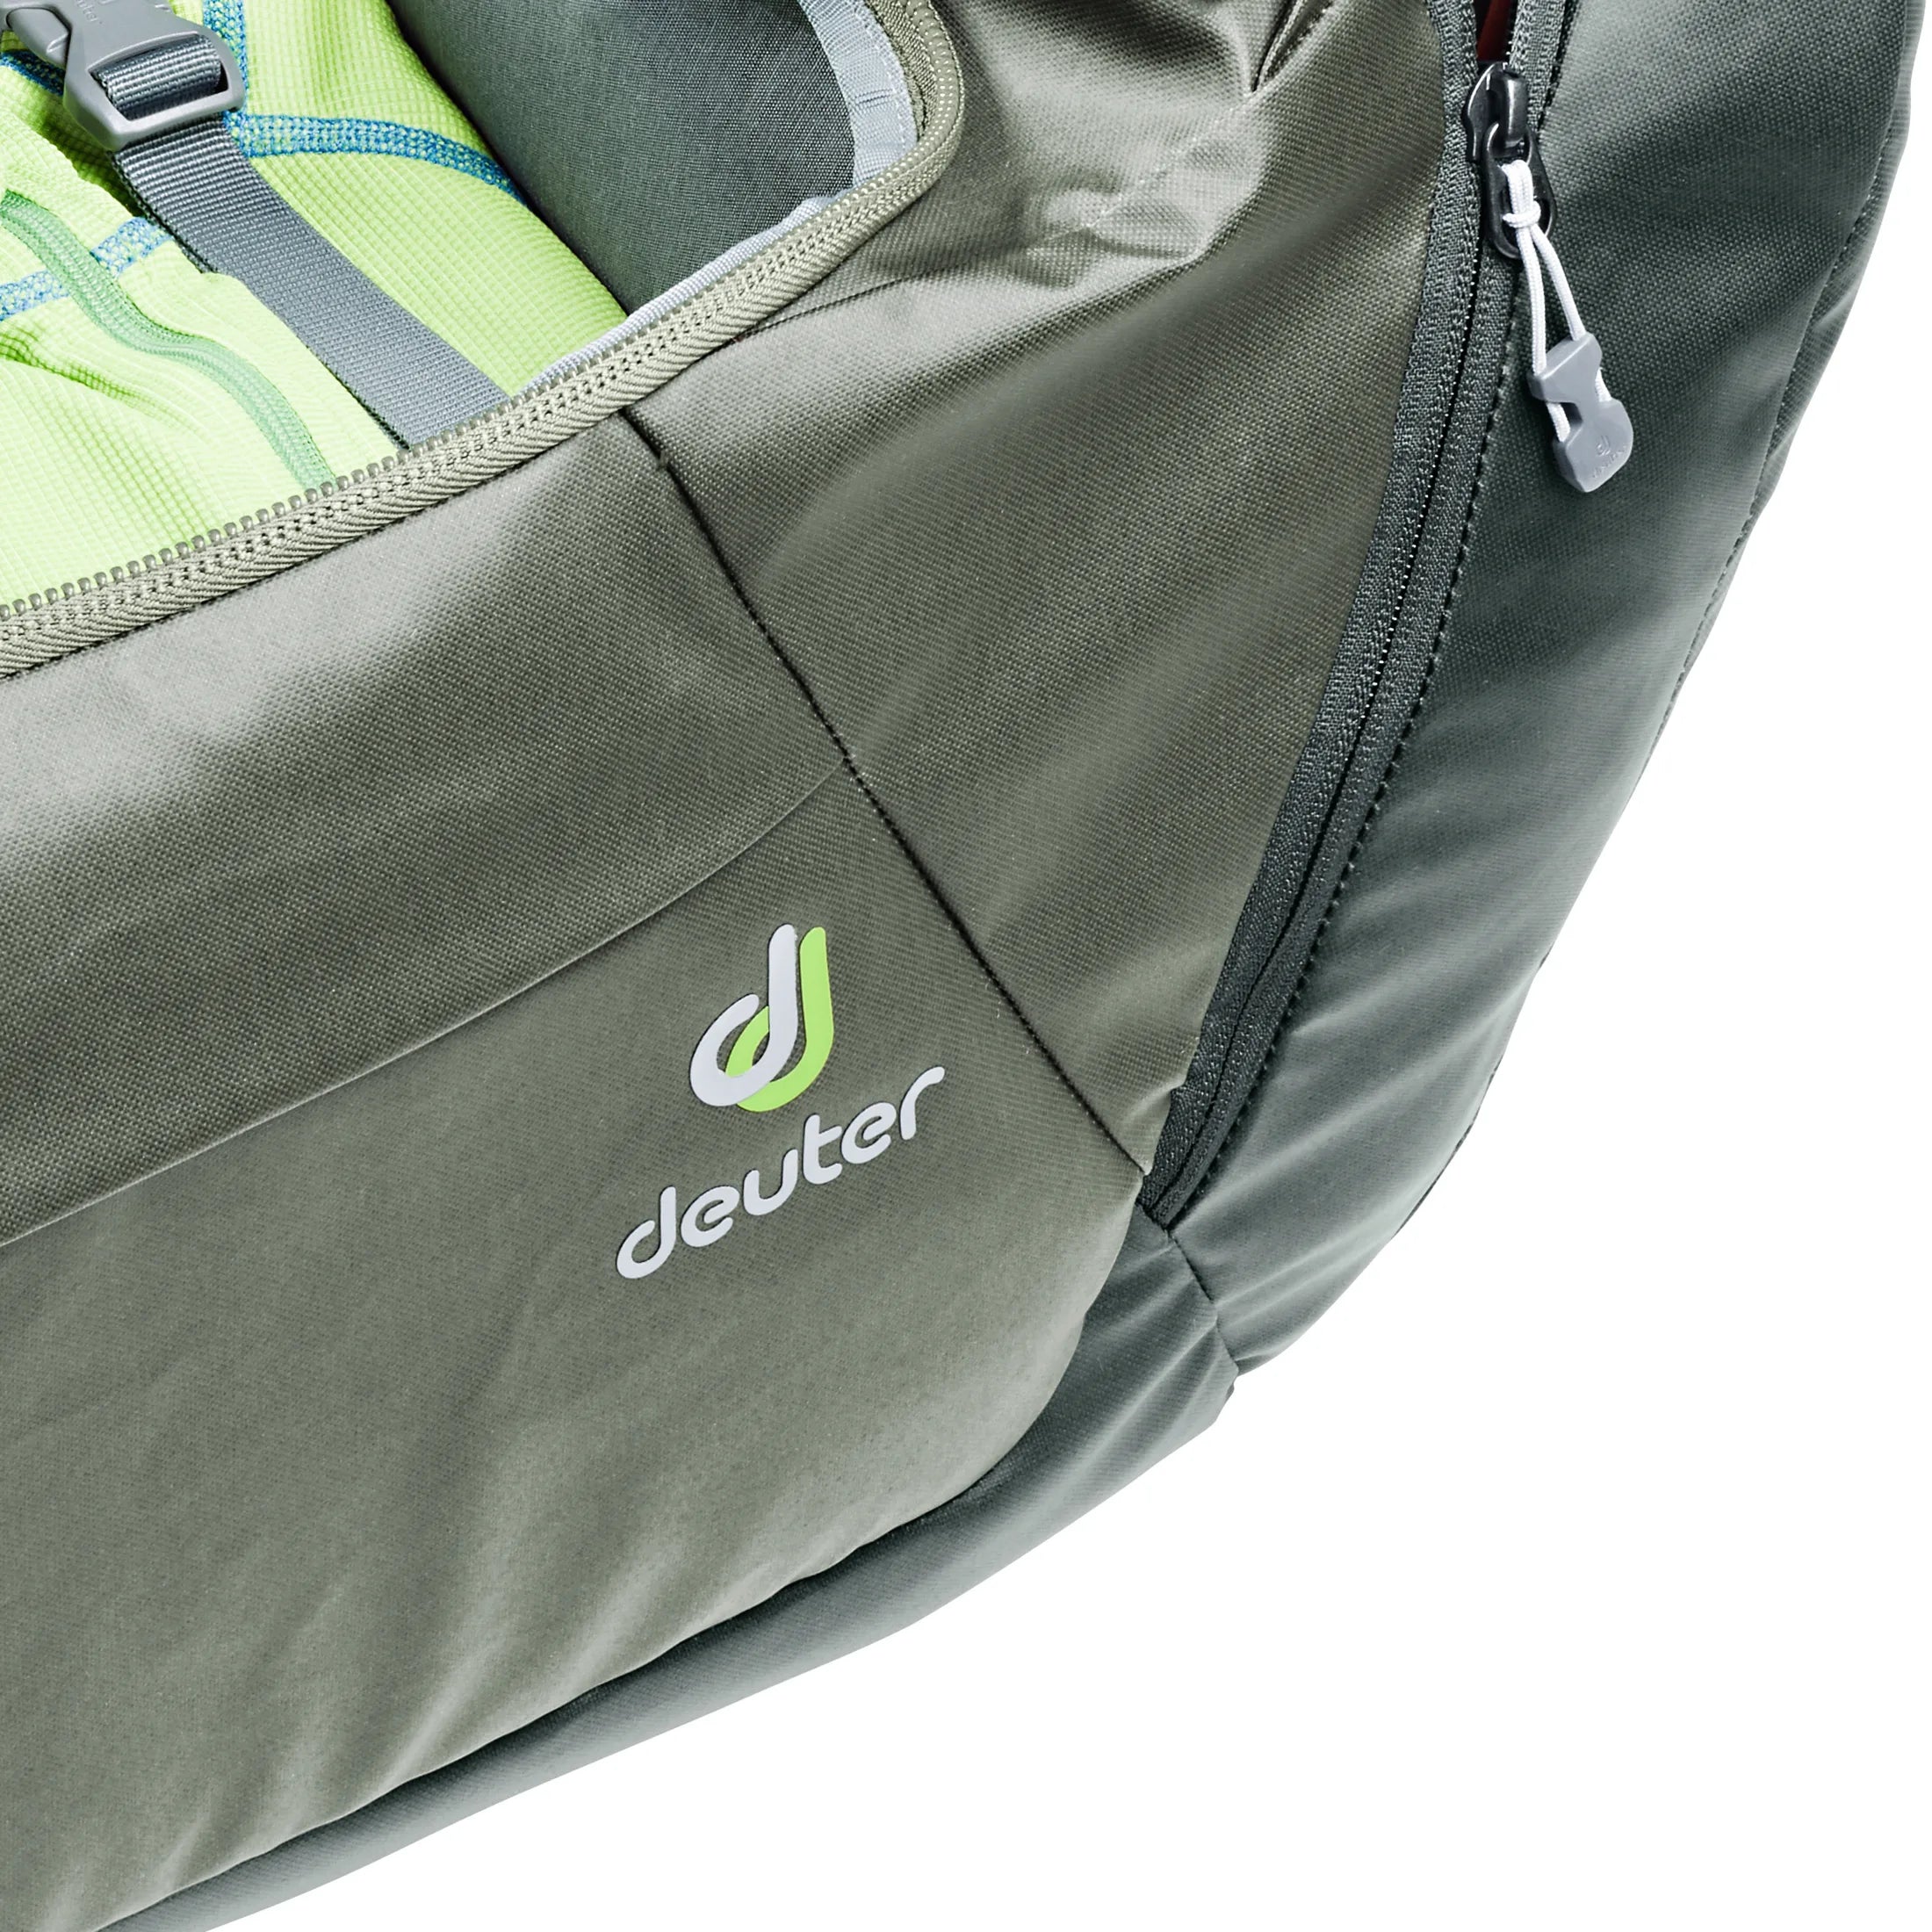 Deuter Travel Aviant Duffle Pro 40 sac de voyage 52 cm - Noir